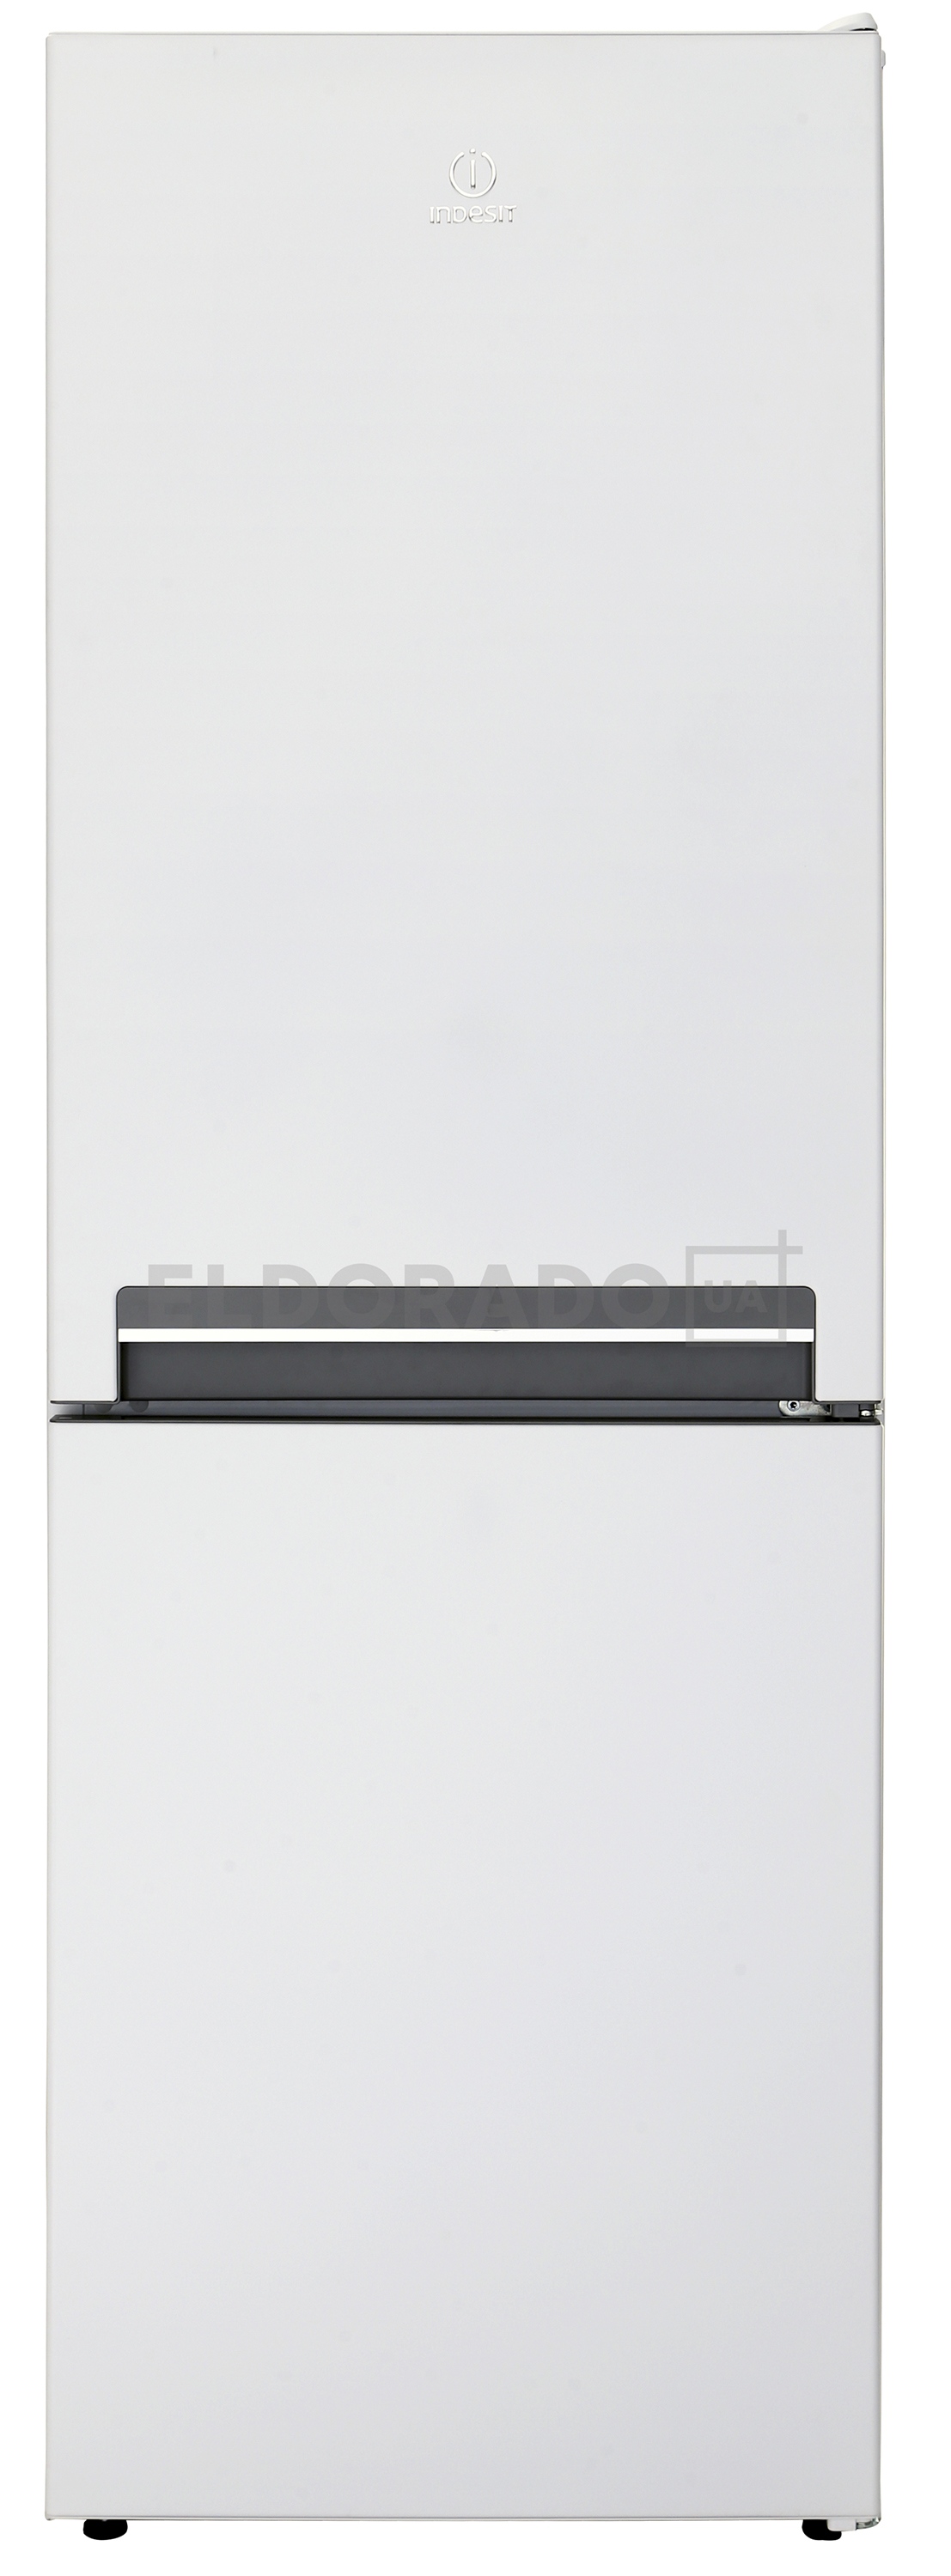 Акция на Холодильник INDESIT LI 7 S1 W от Eldorado